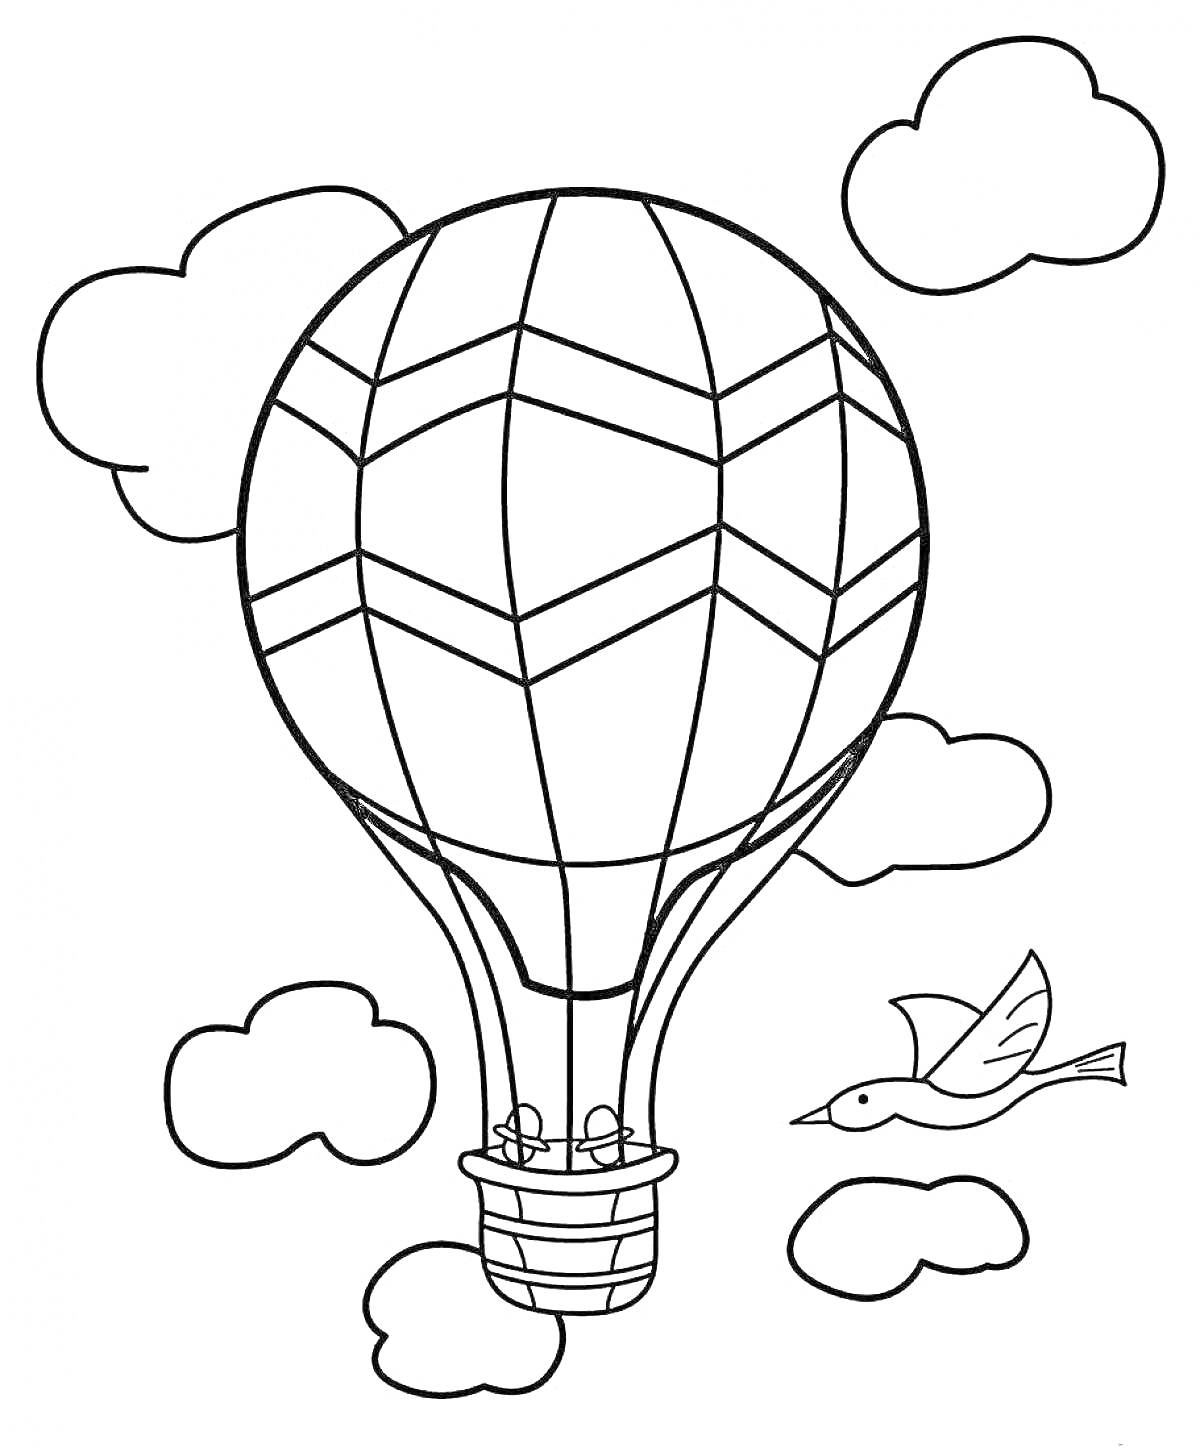 Раскраска Воздушный шар с узором в небе с облаками и птицей